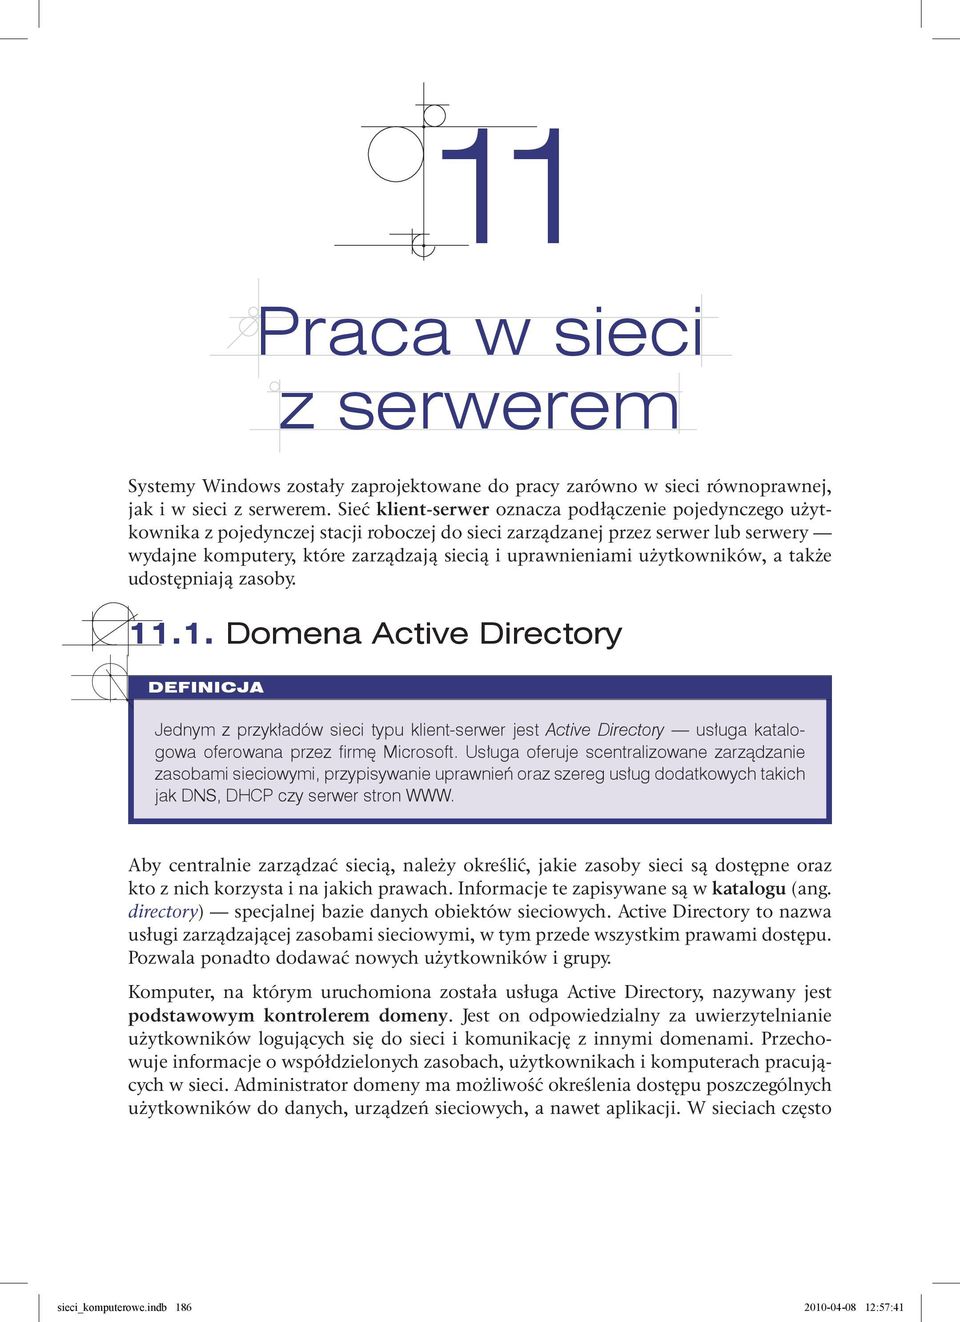 użytkowników, a także udostępniają zasoby. 11.1. Domena Active Directory DEFINICJA Jednym z przykładów sieci typu klient-serwer jest Active Directory usługa katalogowa oferowana przez firmę Microsoft.